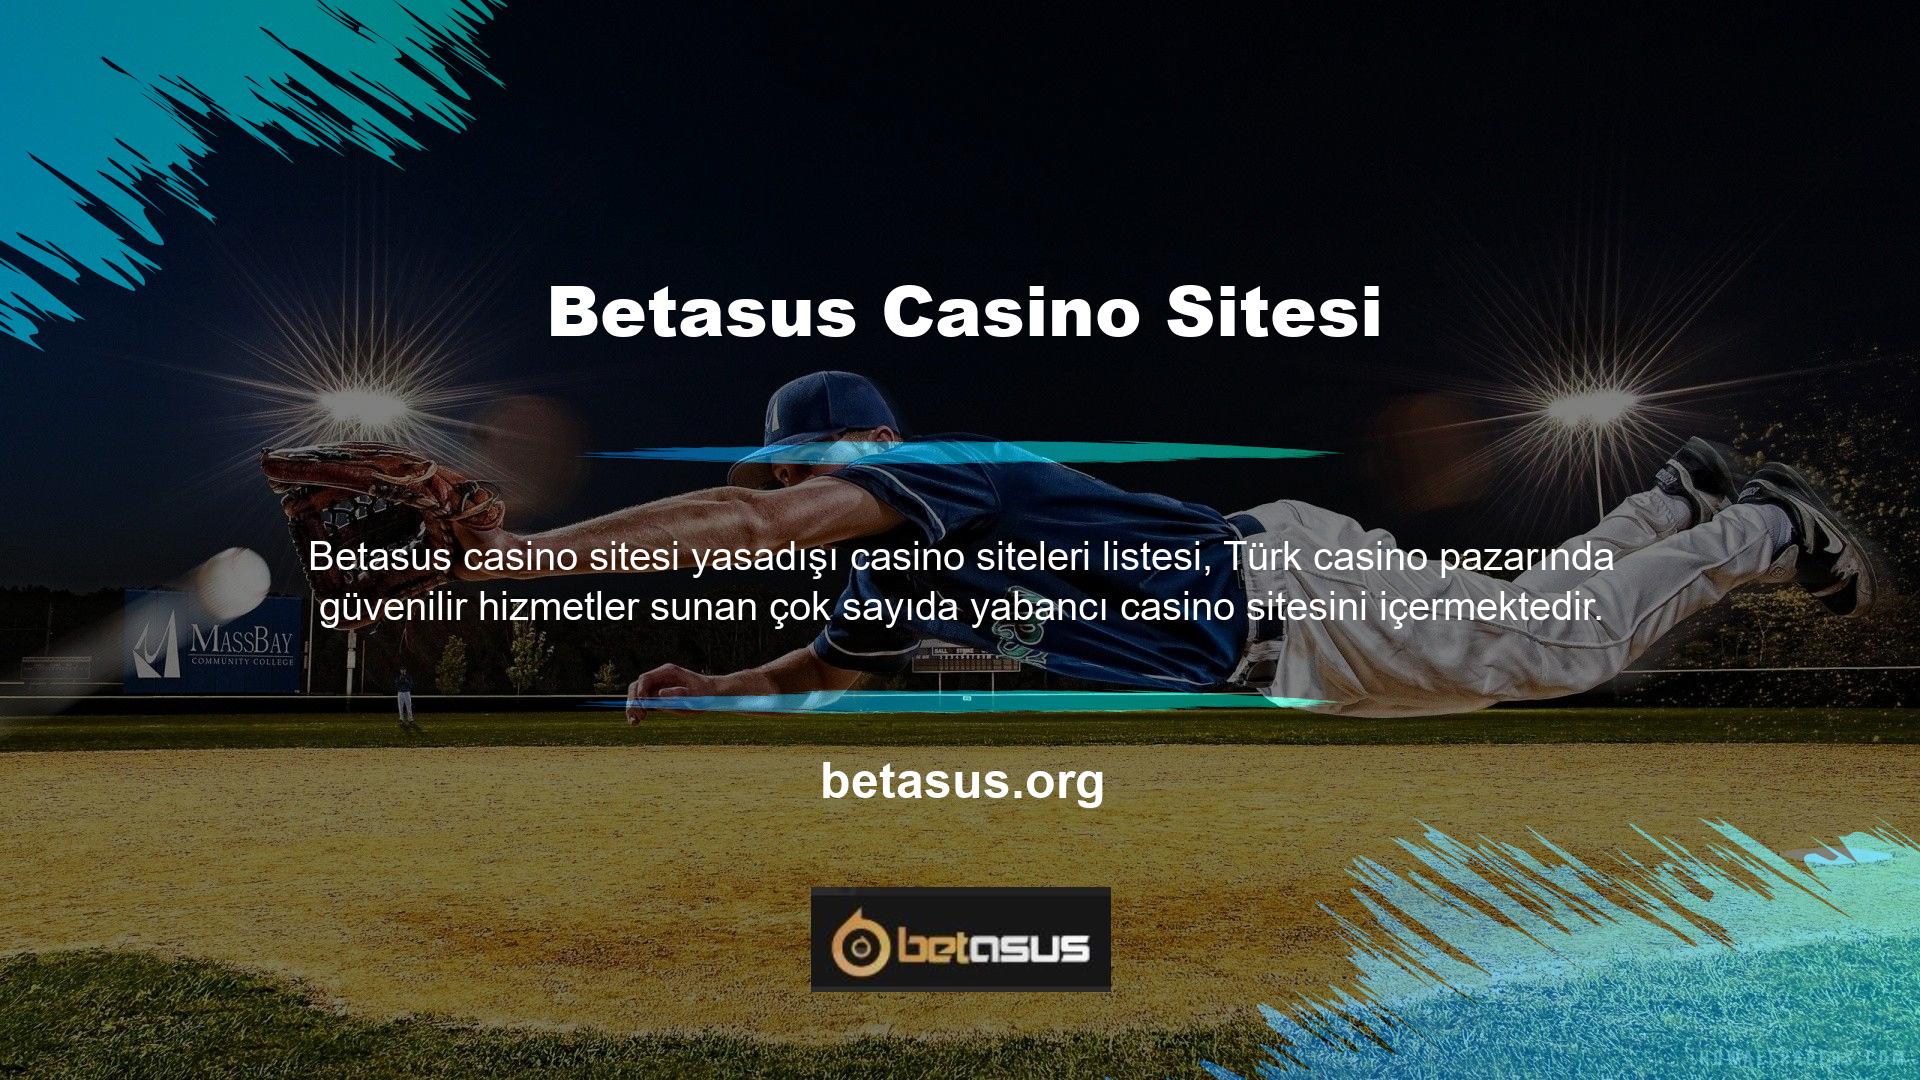 Casino siteleri, hangilerinin en güvenilir olduğunu belirlemeye çalışan çeşitli kuruluşlar tarafından değerlendirilmektedir